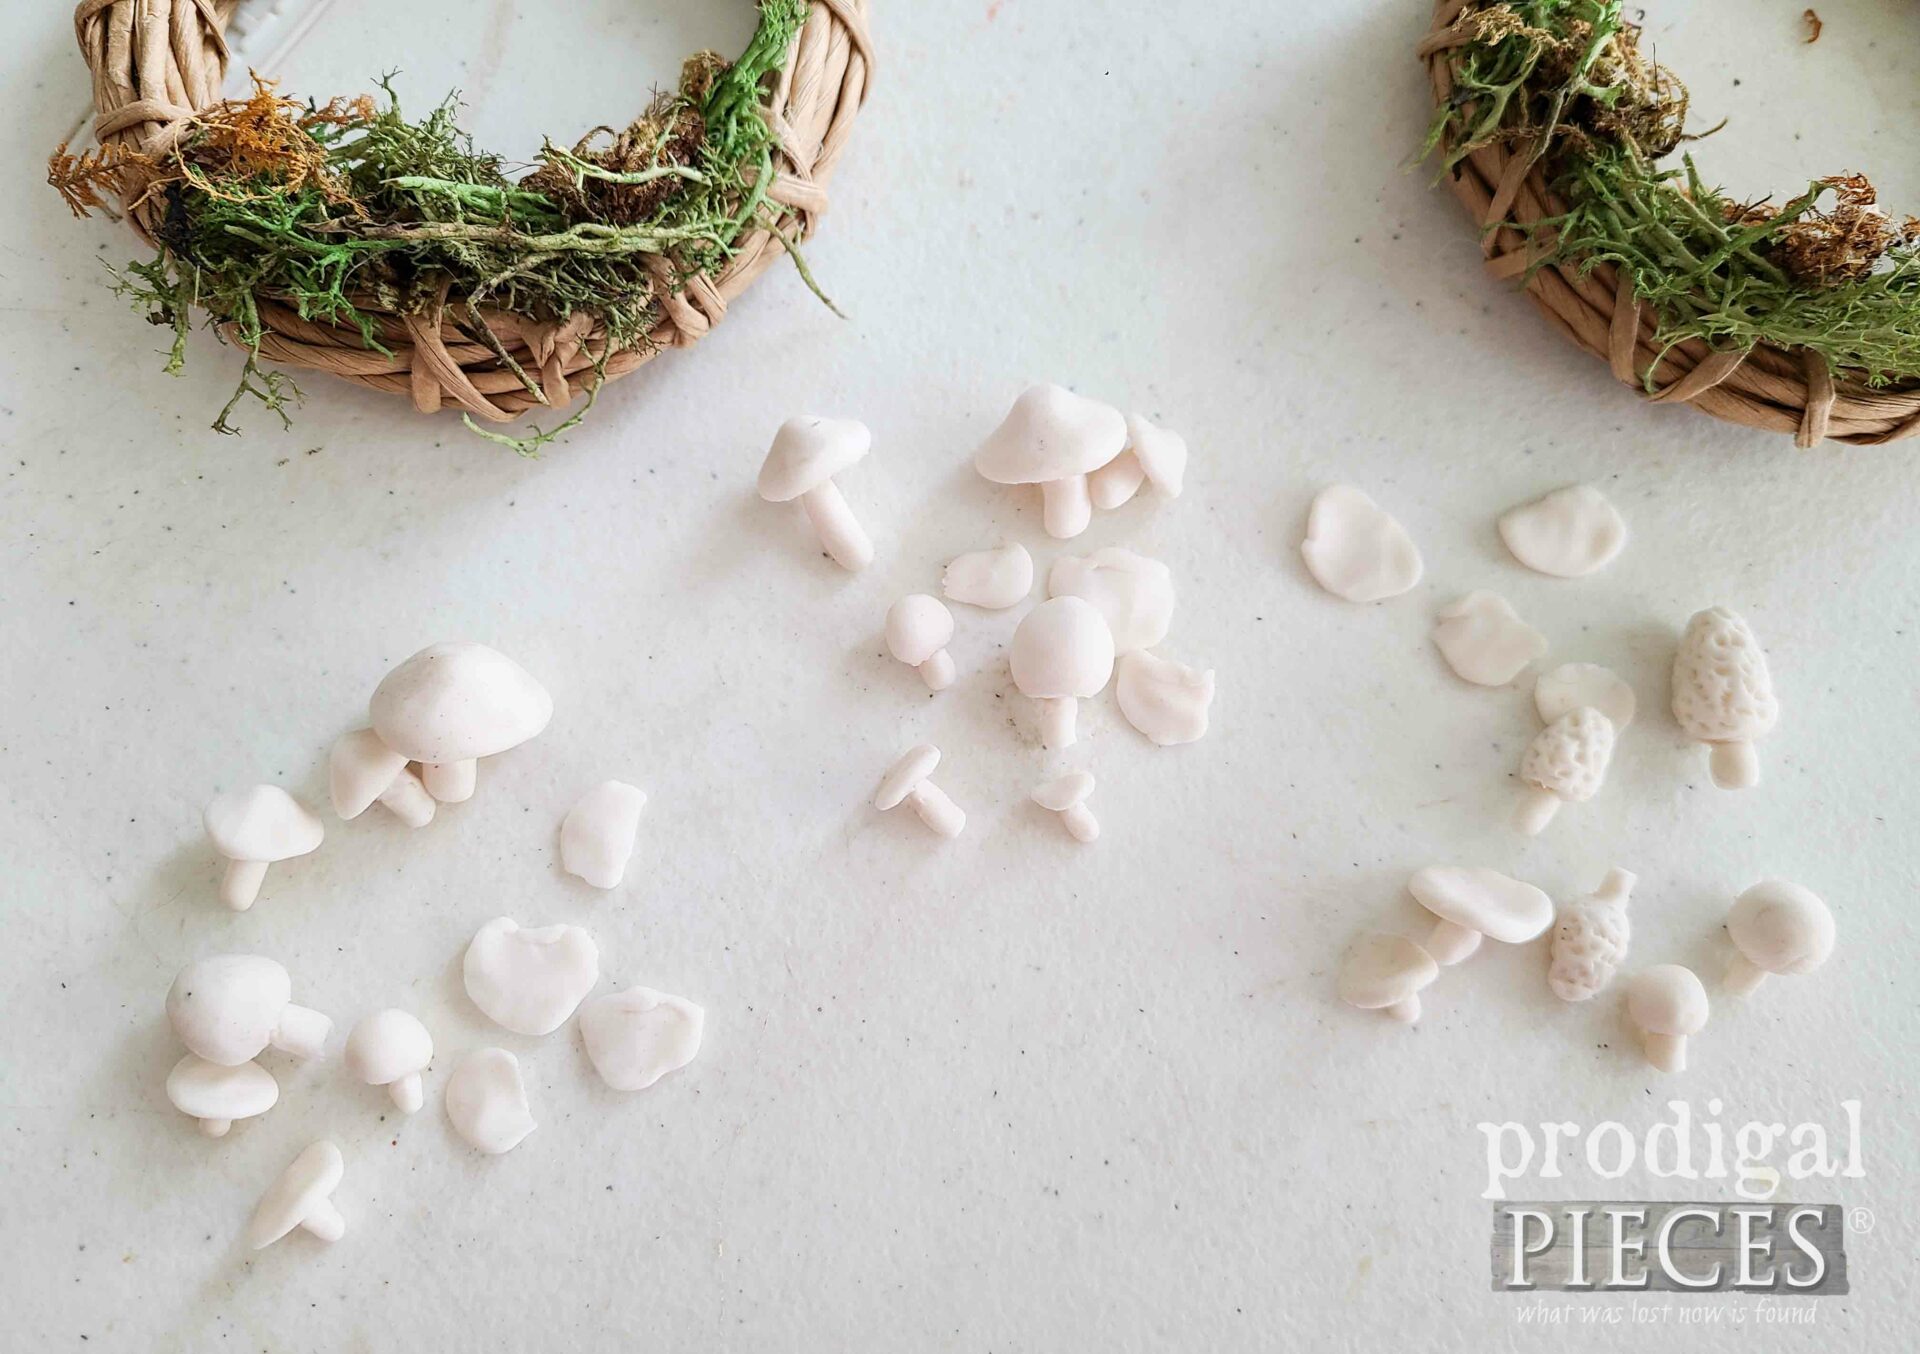 Handmade Clay Mushrooms for Mini Wreath Spring Decor Tutorial | prodigalpieces.com #prodigalpieces